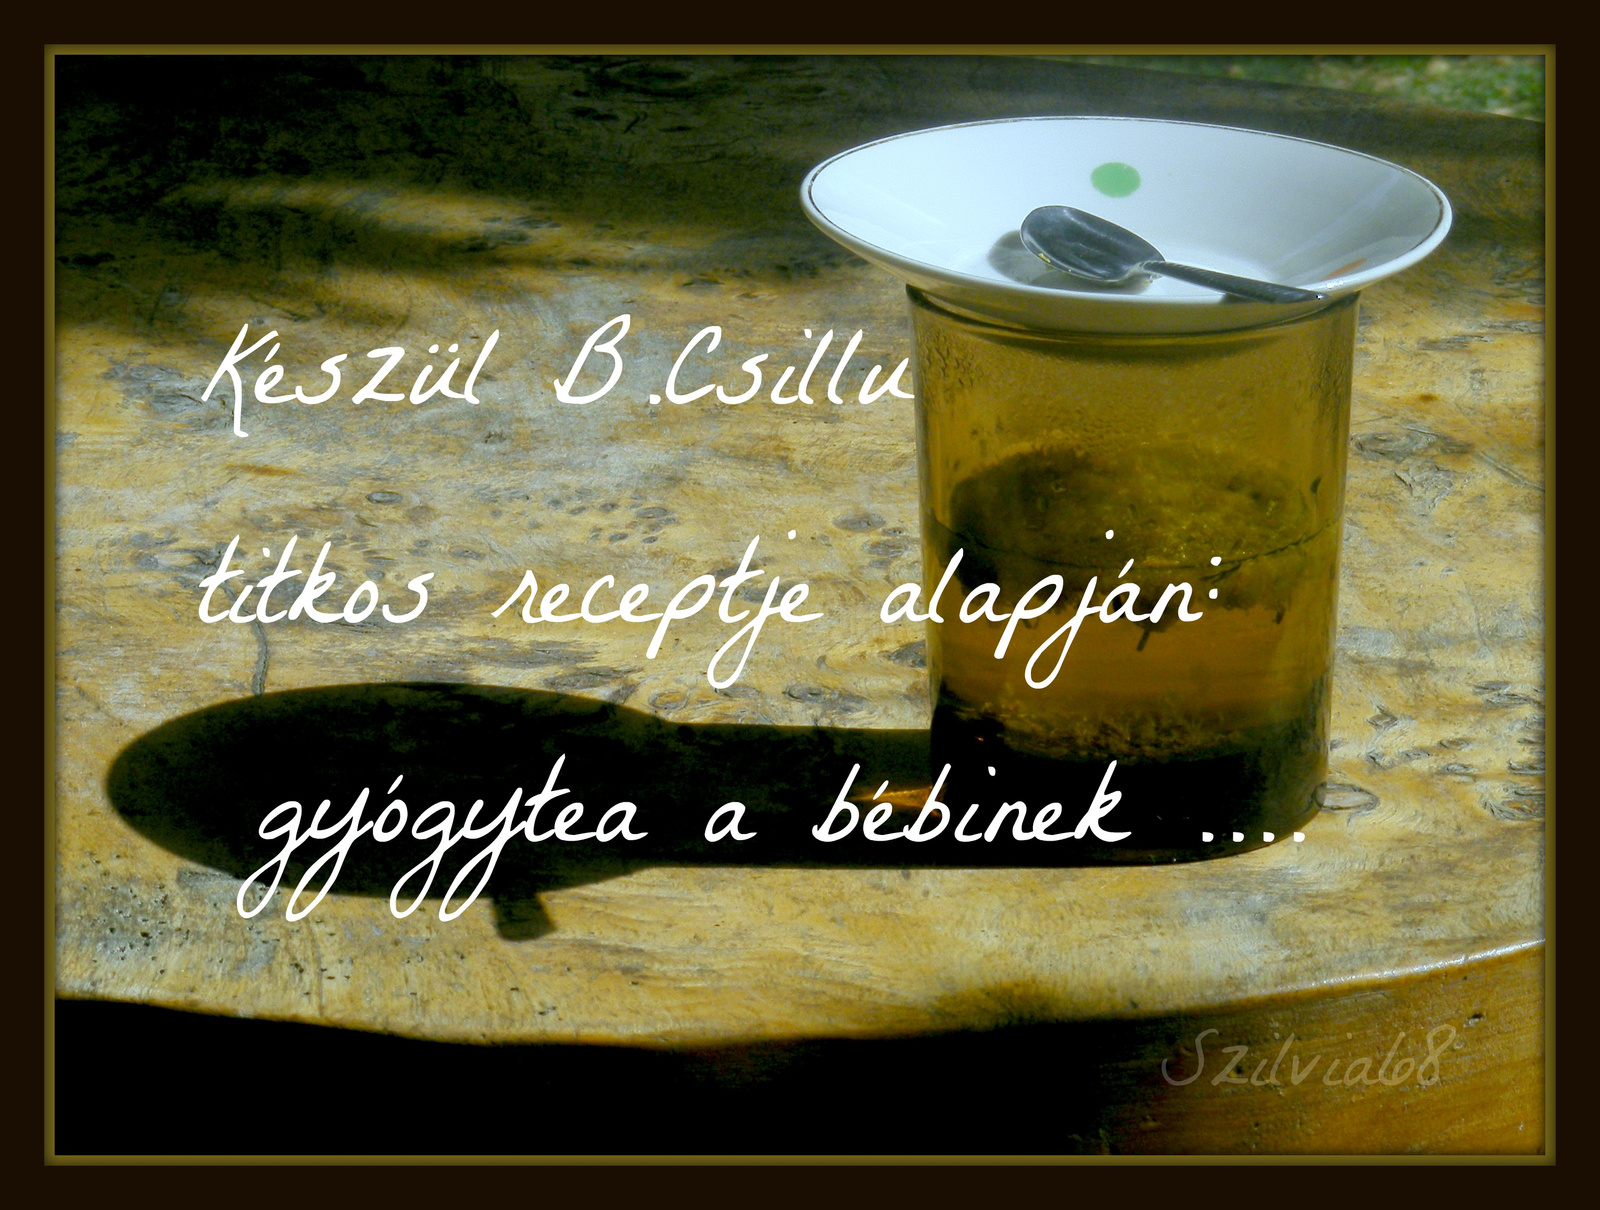 BCsillu tea 2